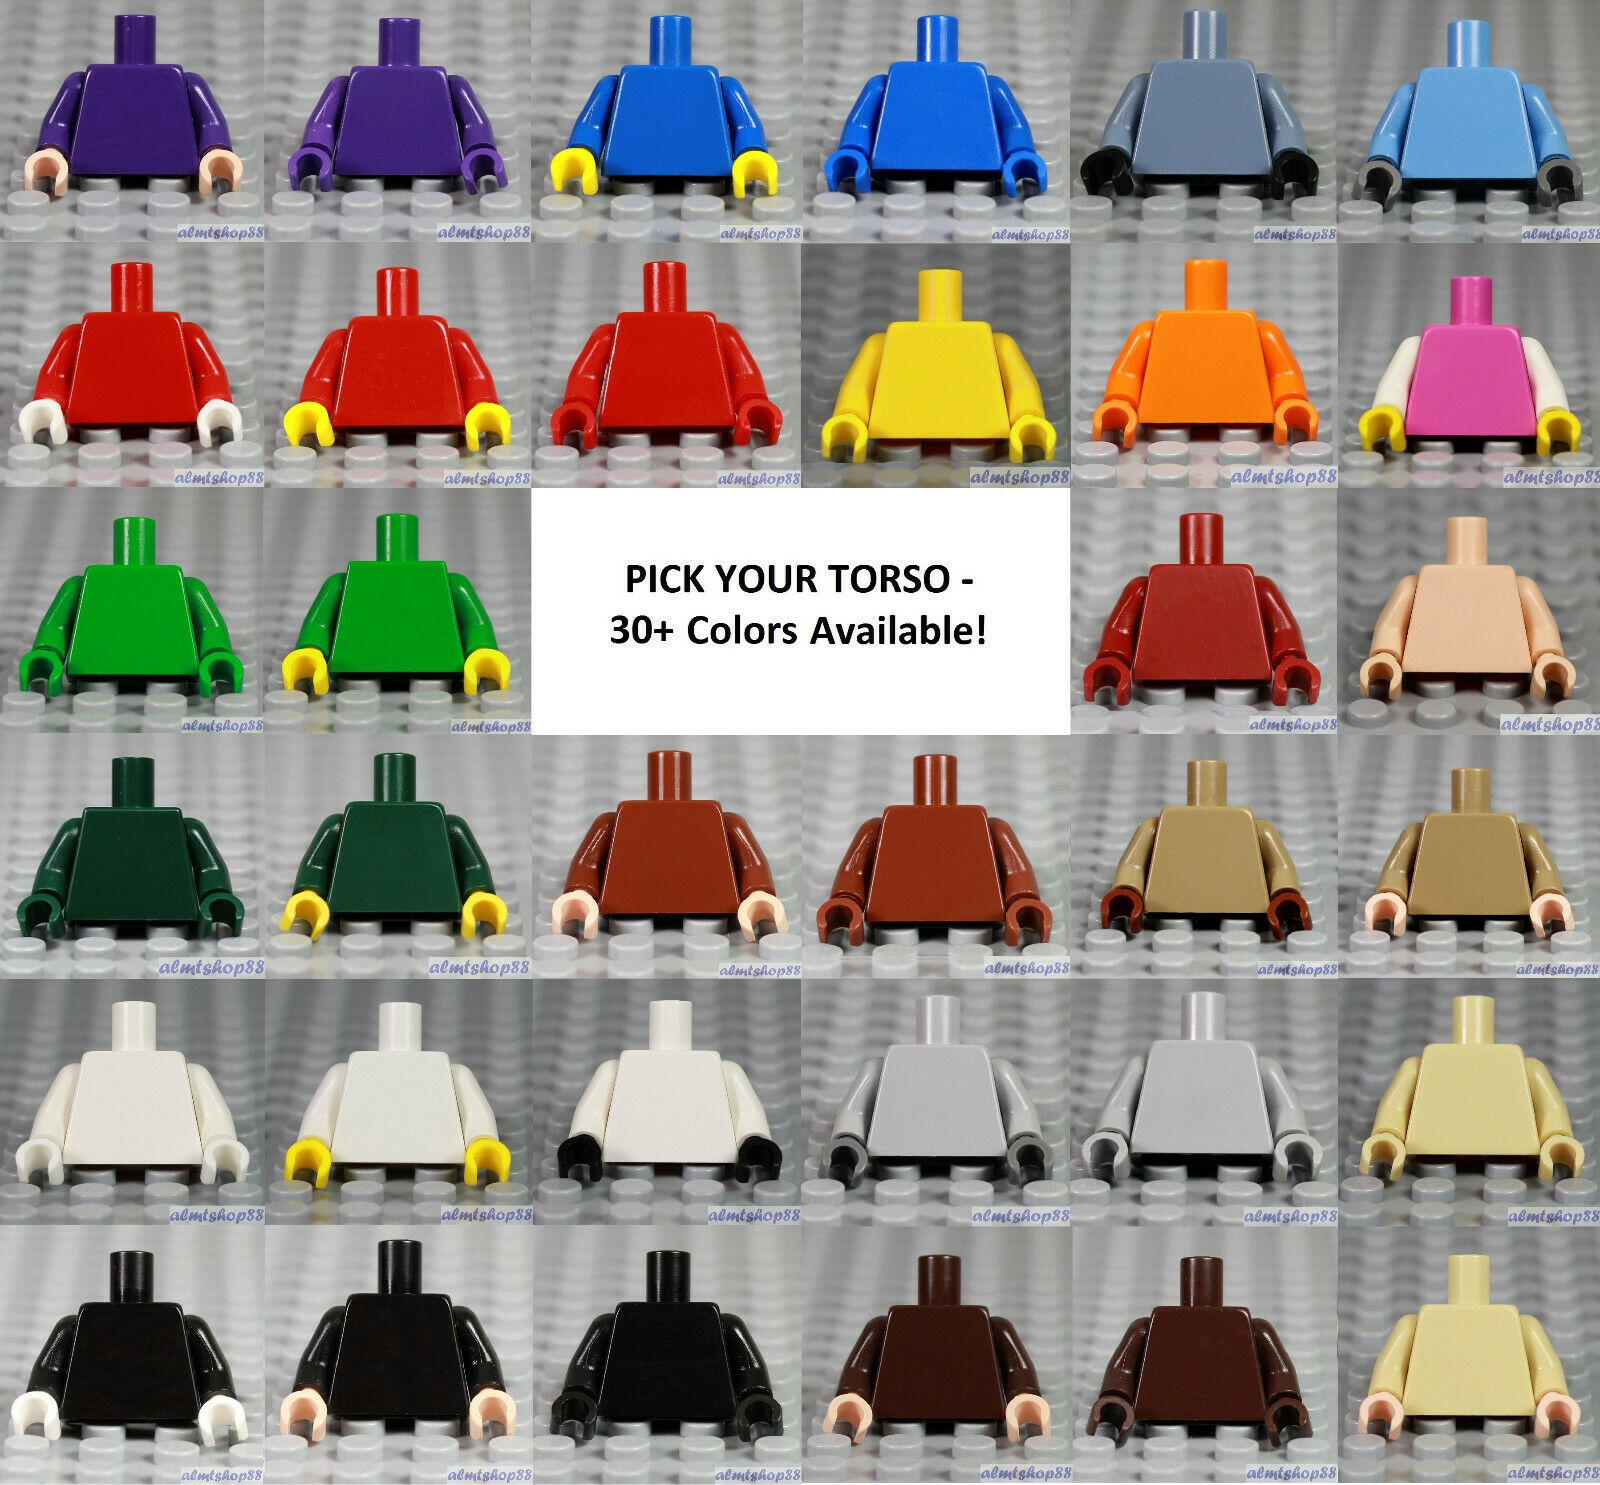 Lego - Minifigure Torso Plain - Pick Your Color - Solid Monochrome Blank Town